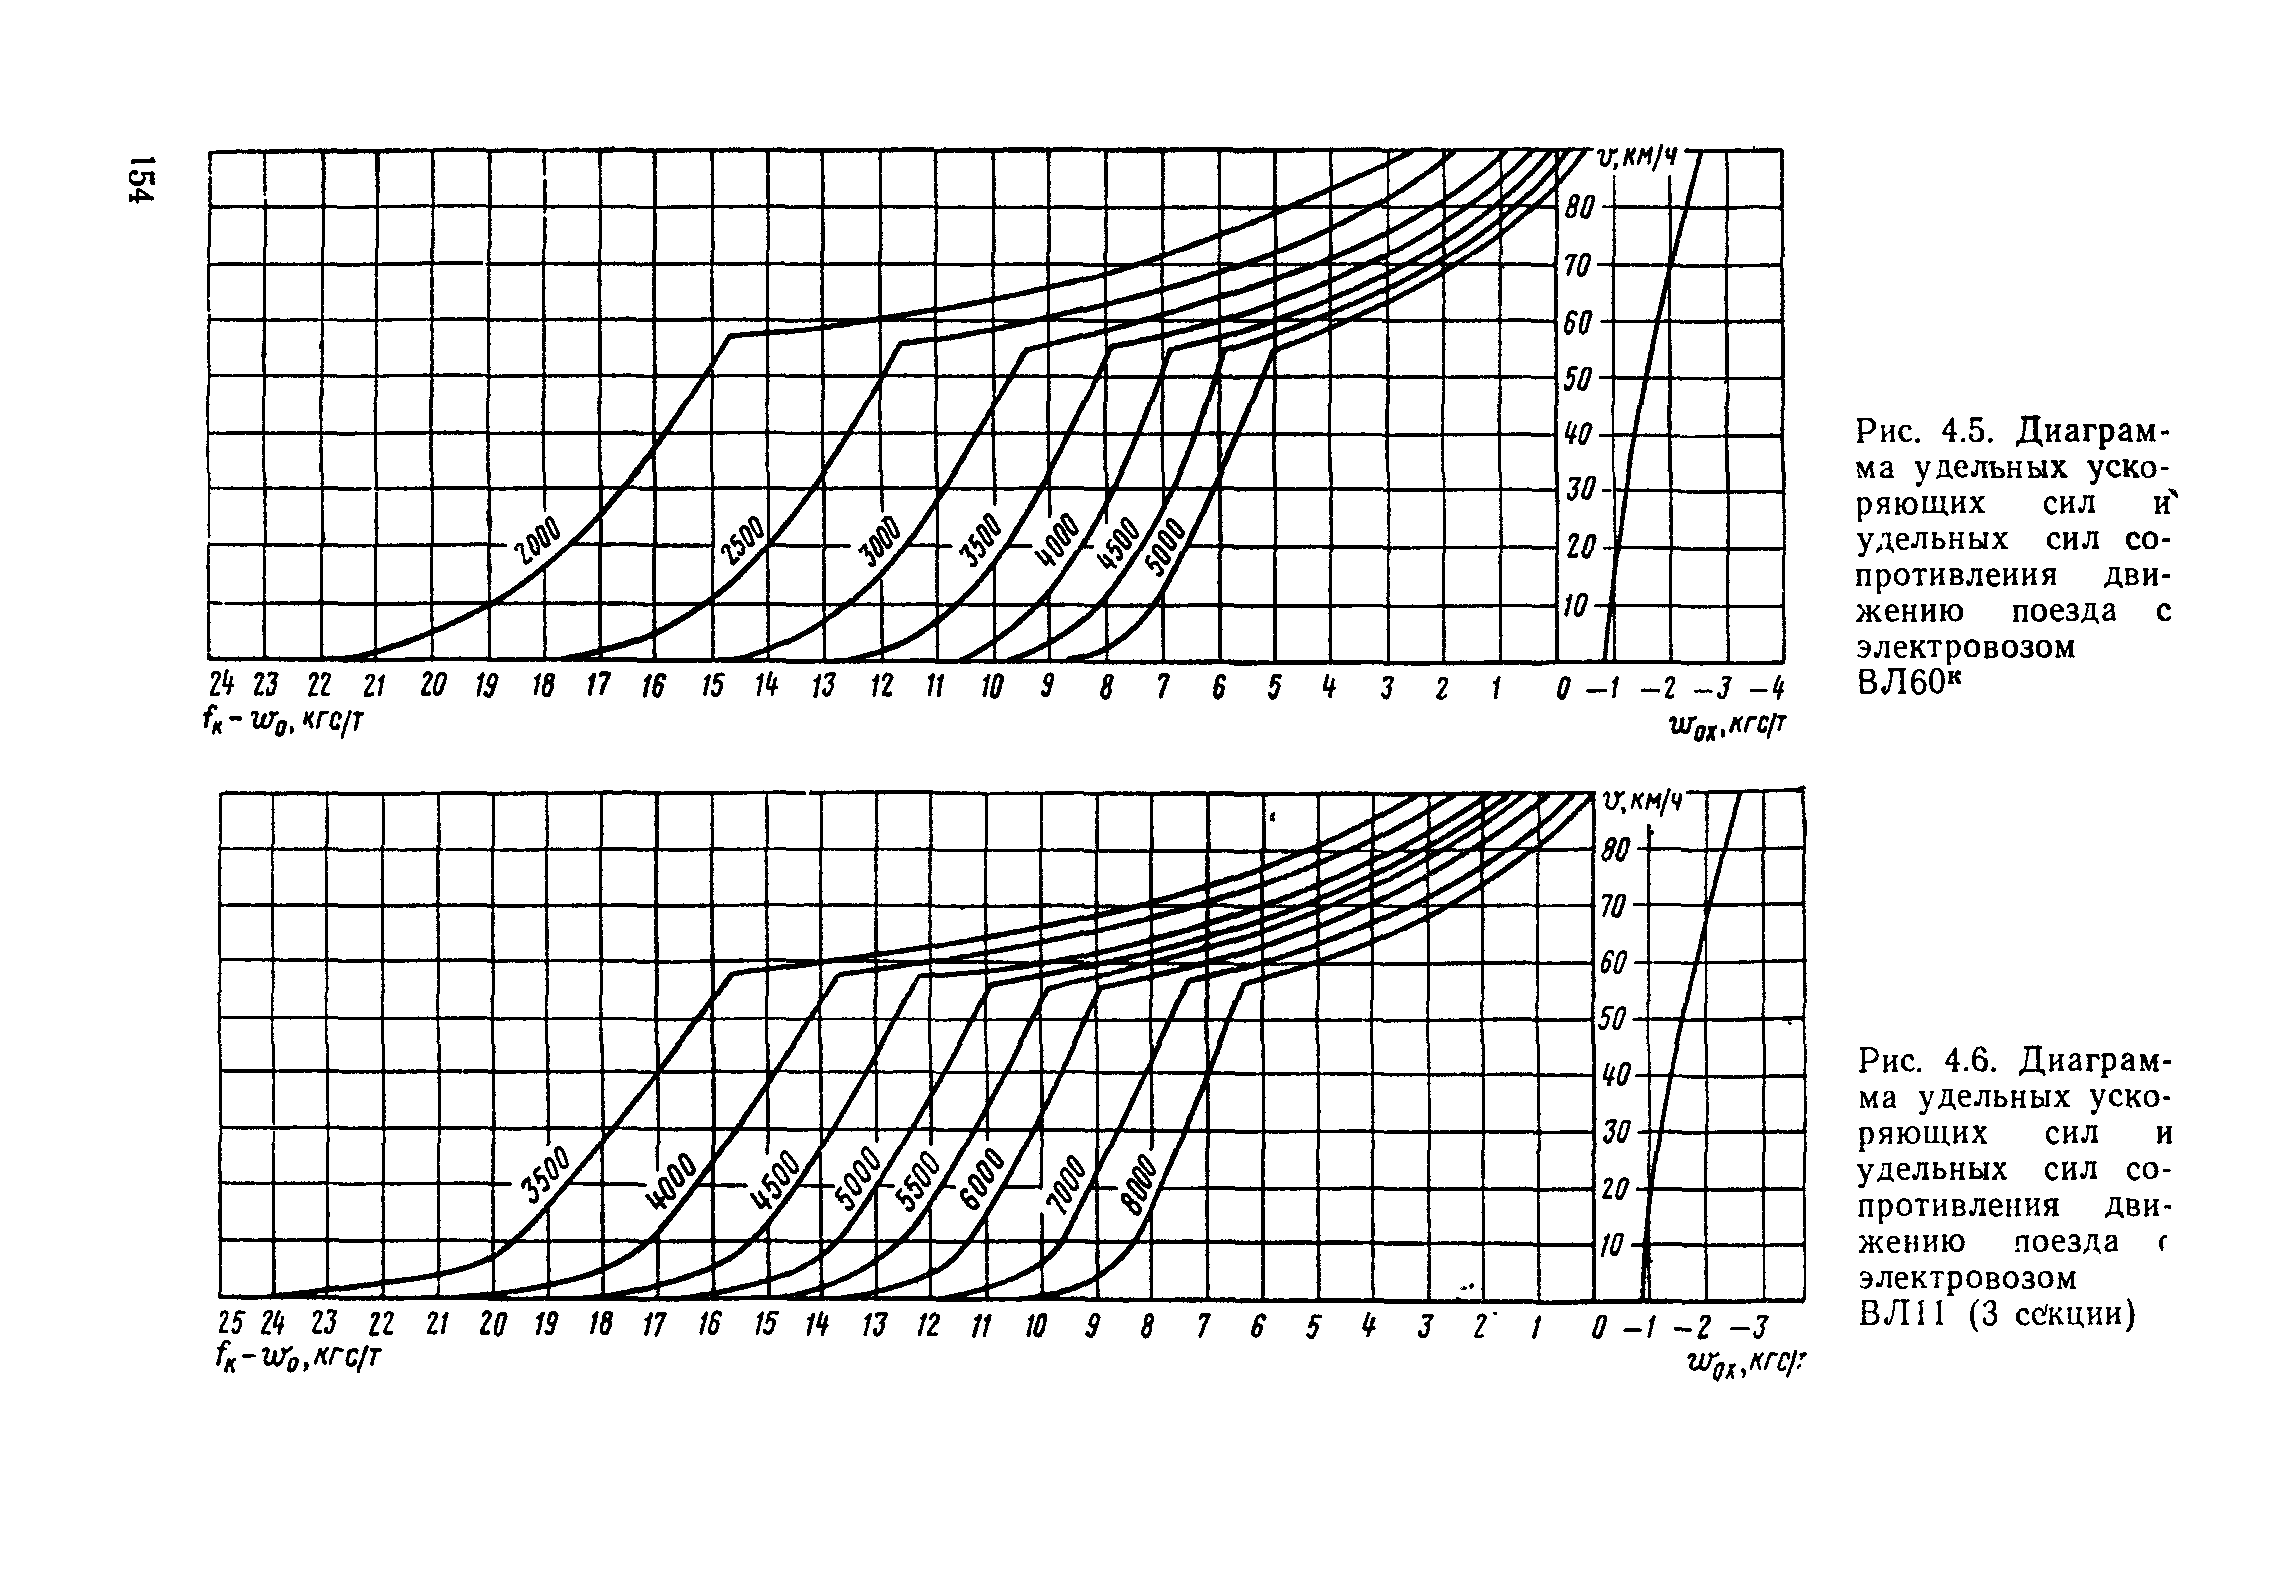 Рис. 4.6. Диаграмма удельных ускоряющих сил и удельных сил <a href="/info/266900">сопротивления движению поезда</a> г электровозом ВЛП (3 се кции)
